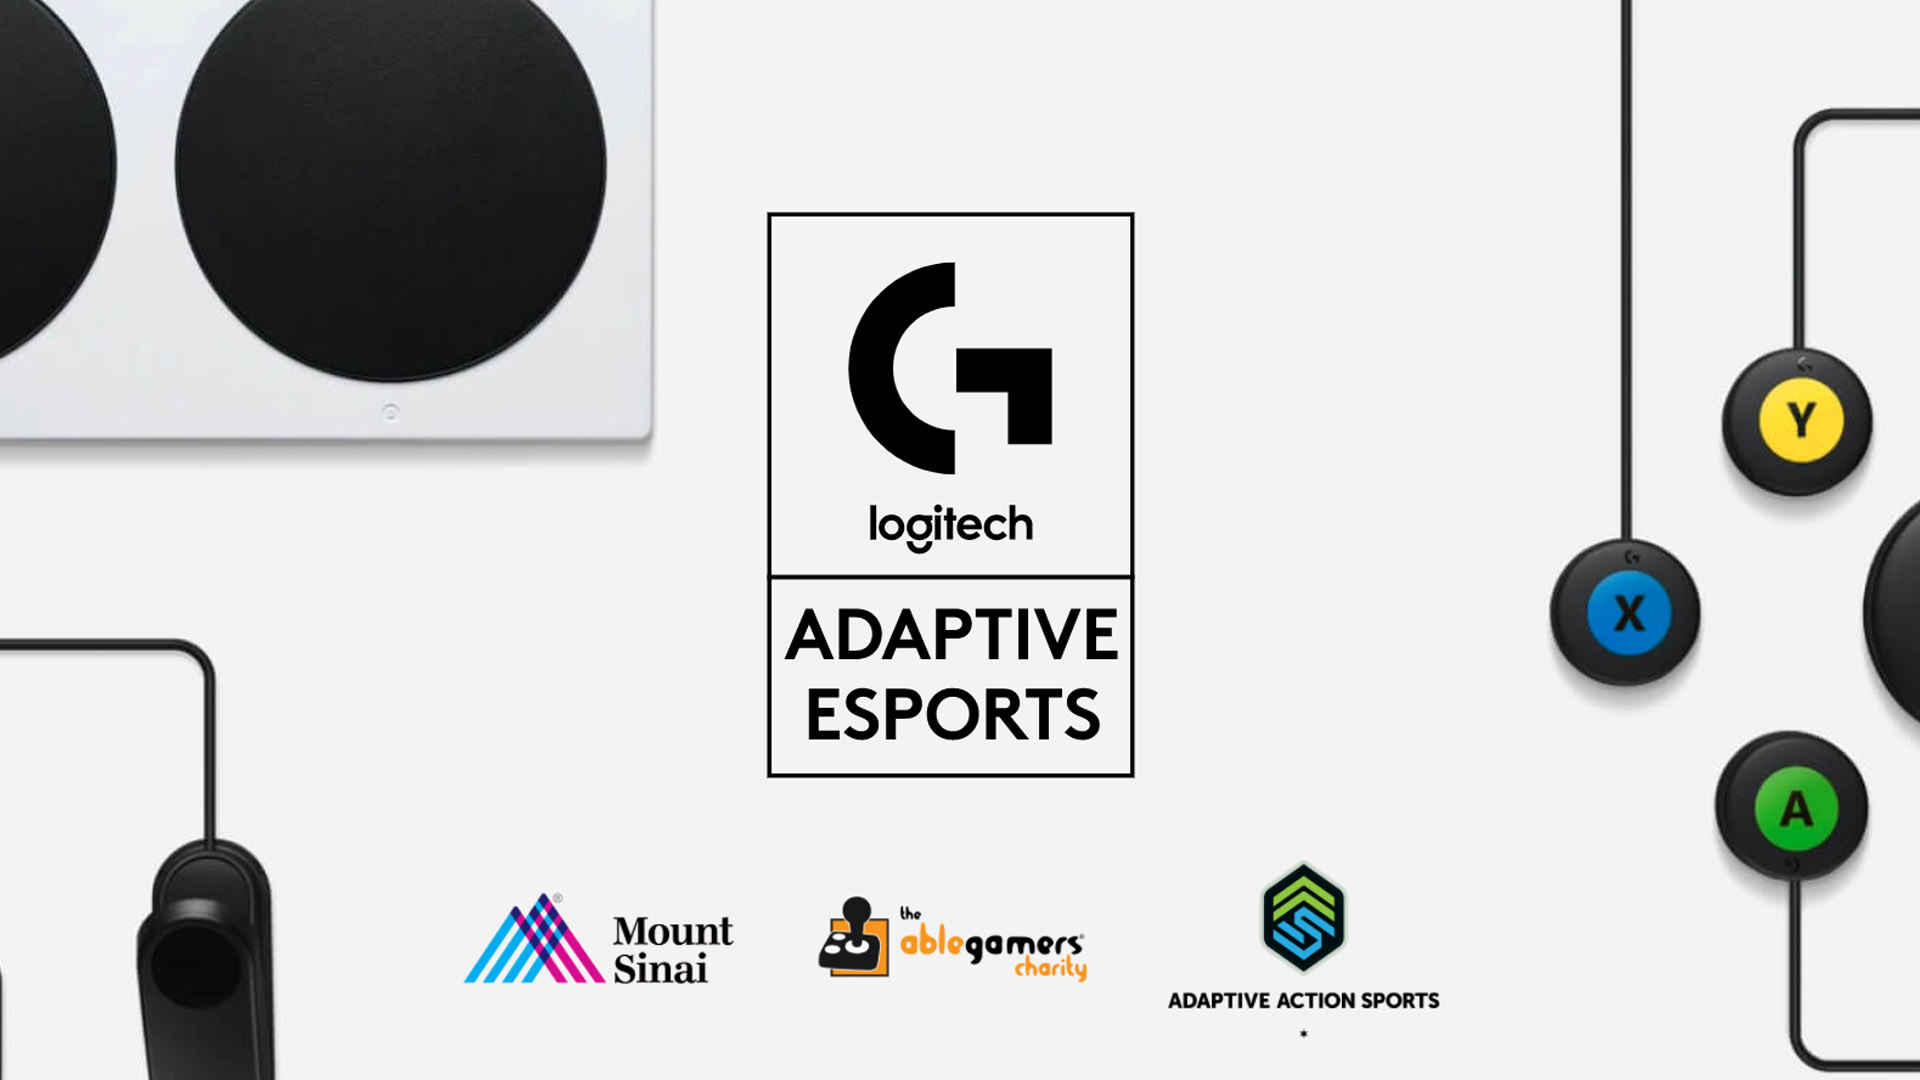 logitech adaptive esports